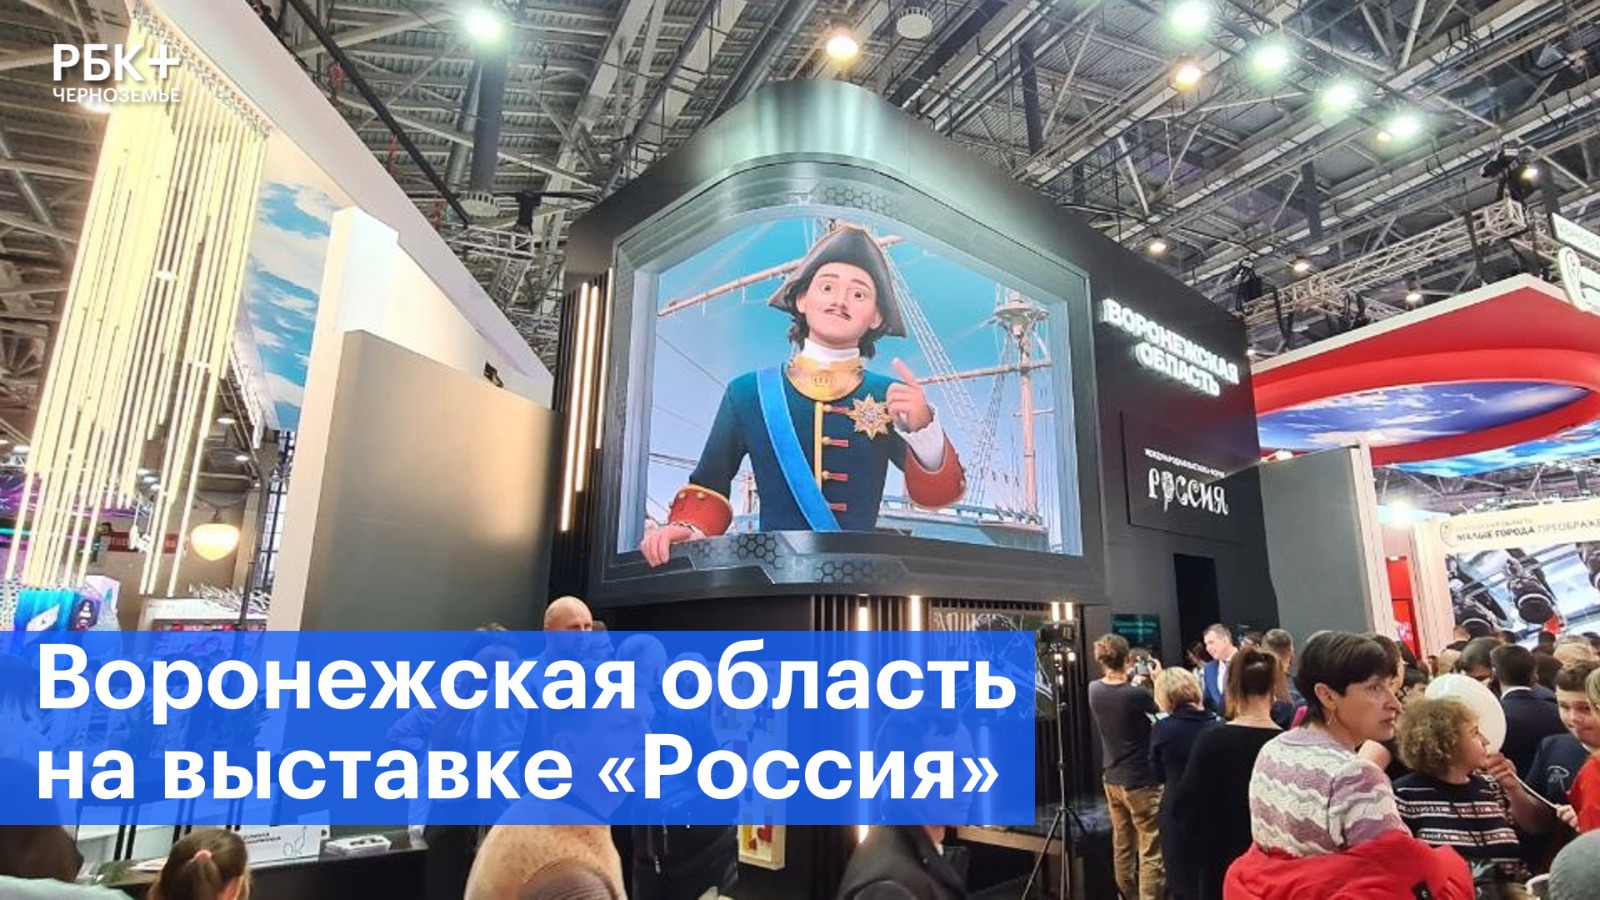 Воронежский стенд на выставке «Россия» удивил гостей мультимедийностью